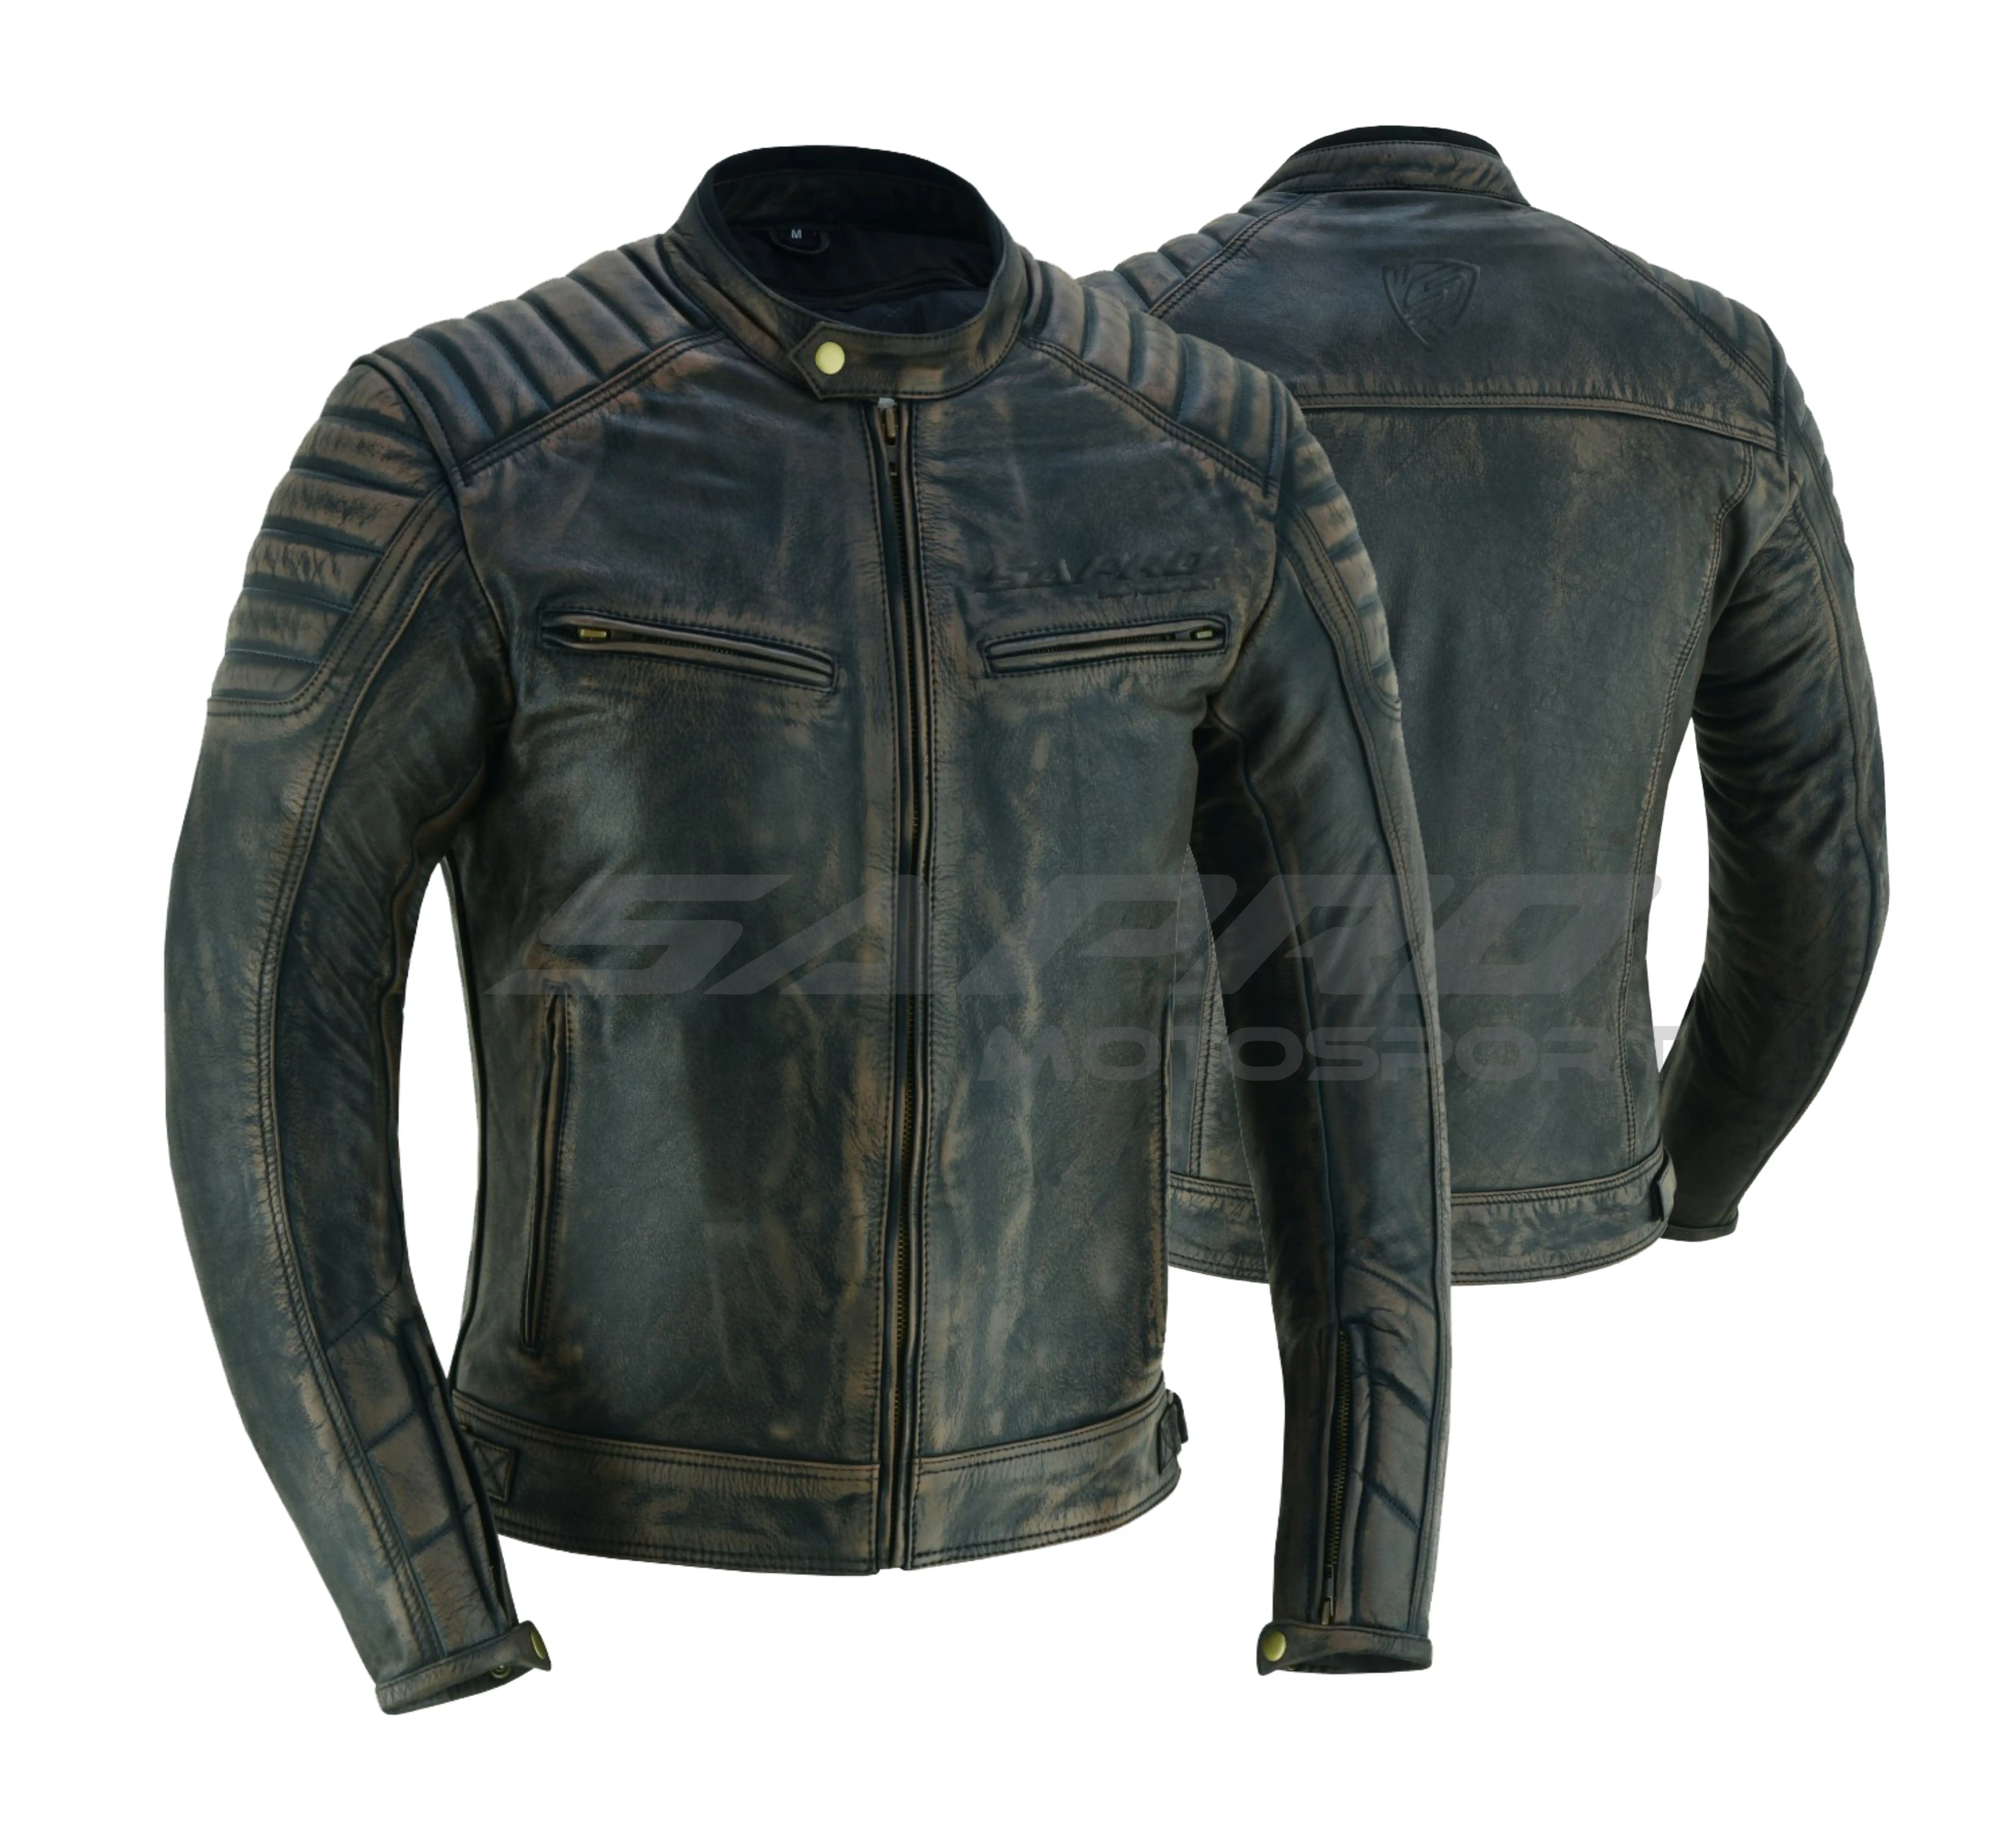 Stylish Custom Made High Quality Motorcycle Racing Jacket Sapro Riding Leather Jacket Wholesale Biker Jacket